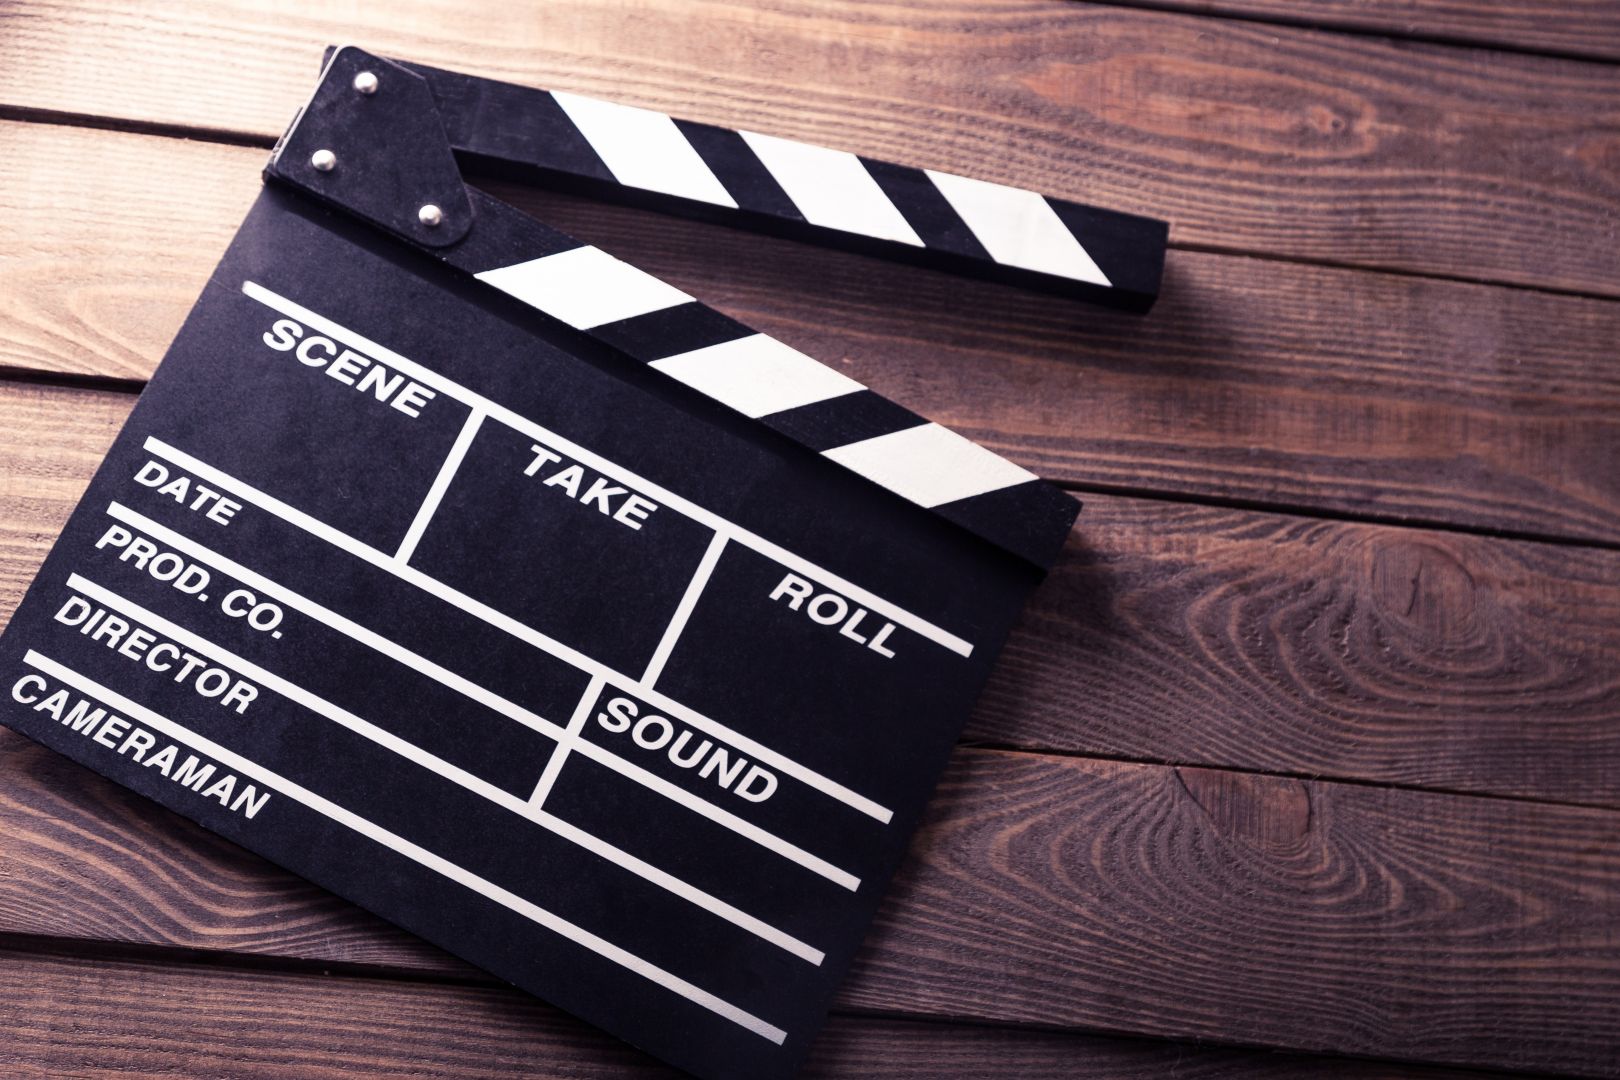 Poptávka na profesionální natočení a zpracování videa (Film, video) - Jablonec nad Nisou